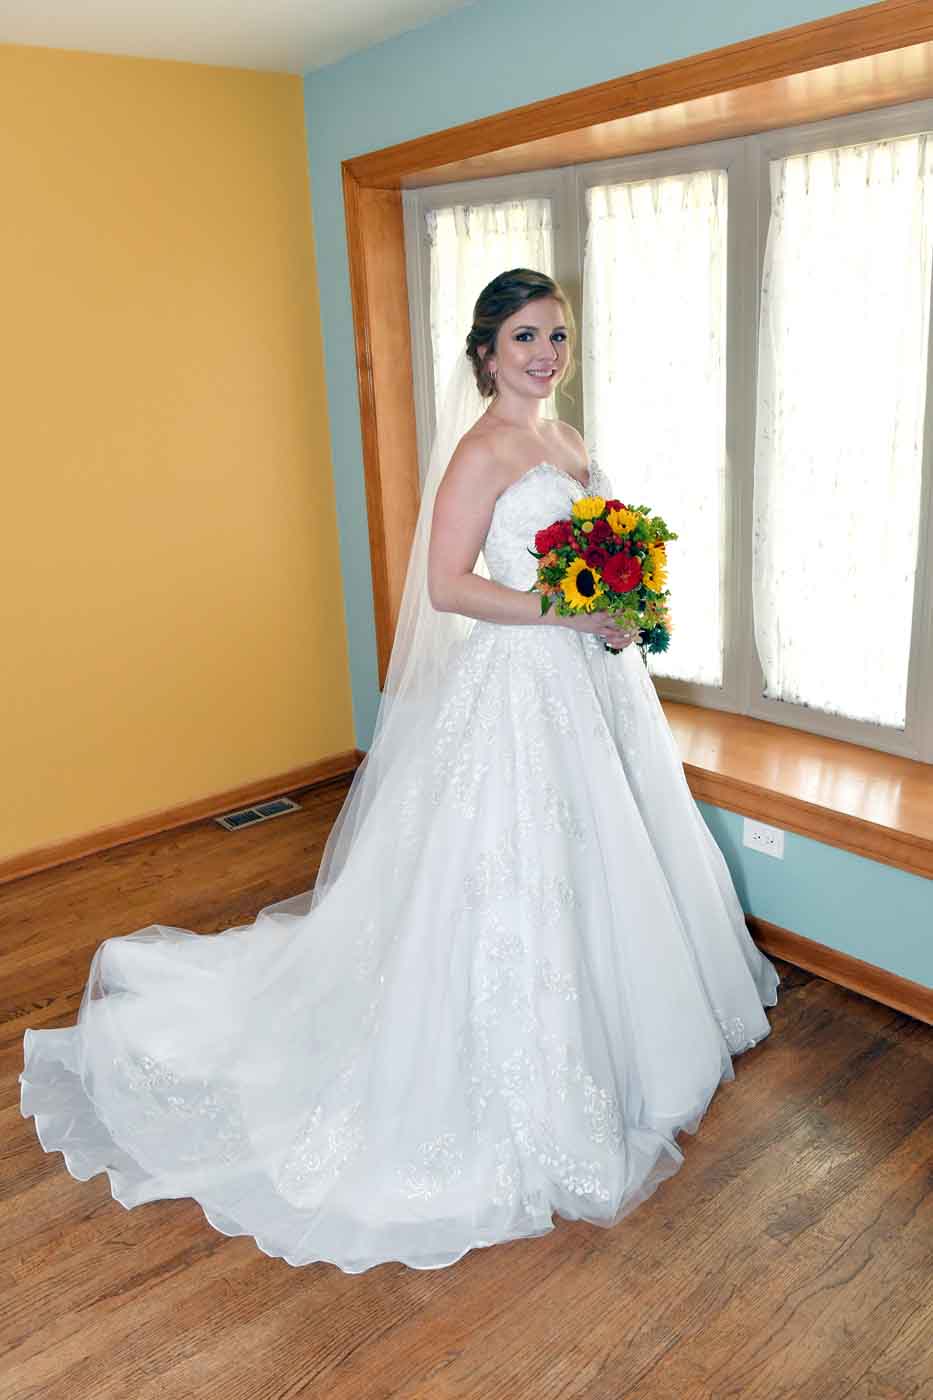 Bride posing